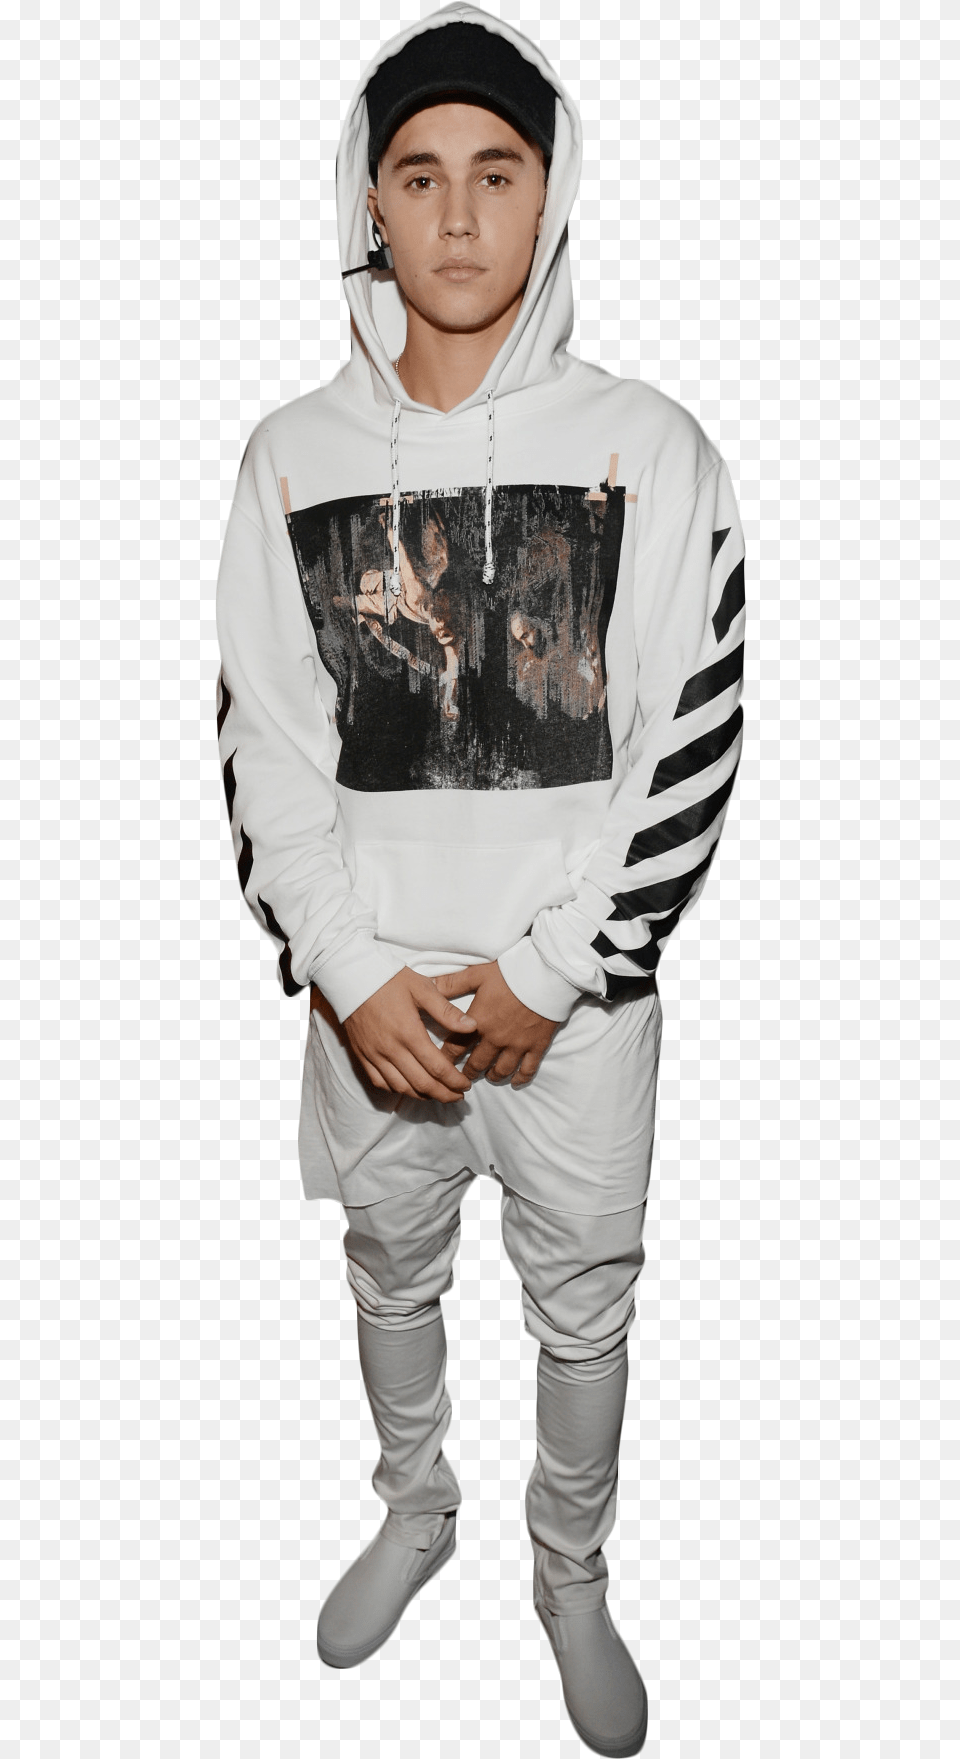 Justin Bieber On Stage Hoodie, Sweatshirt, Clothing, Sweater, Hood Free Png Download